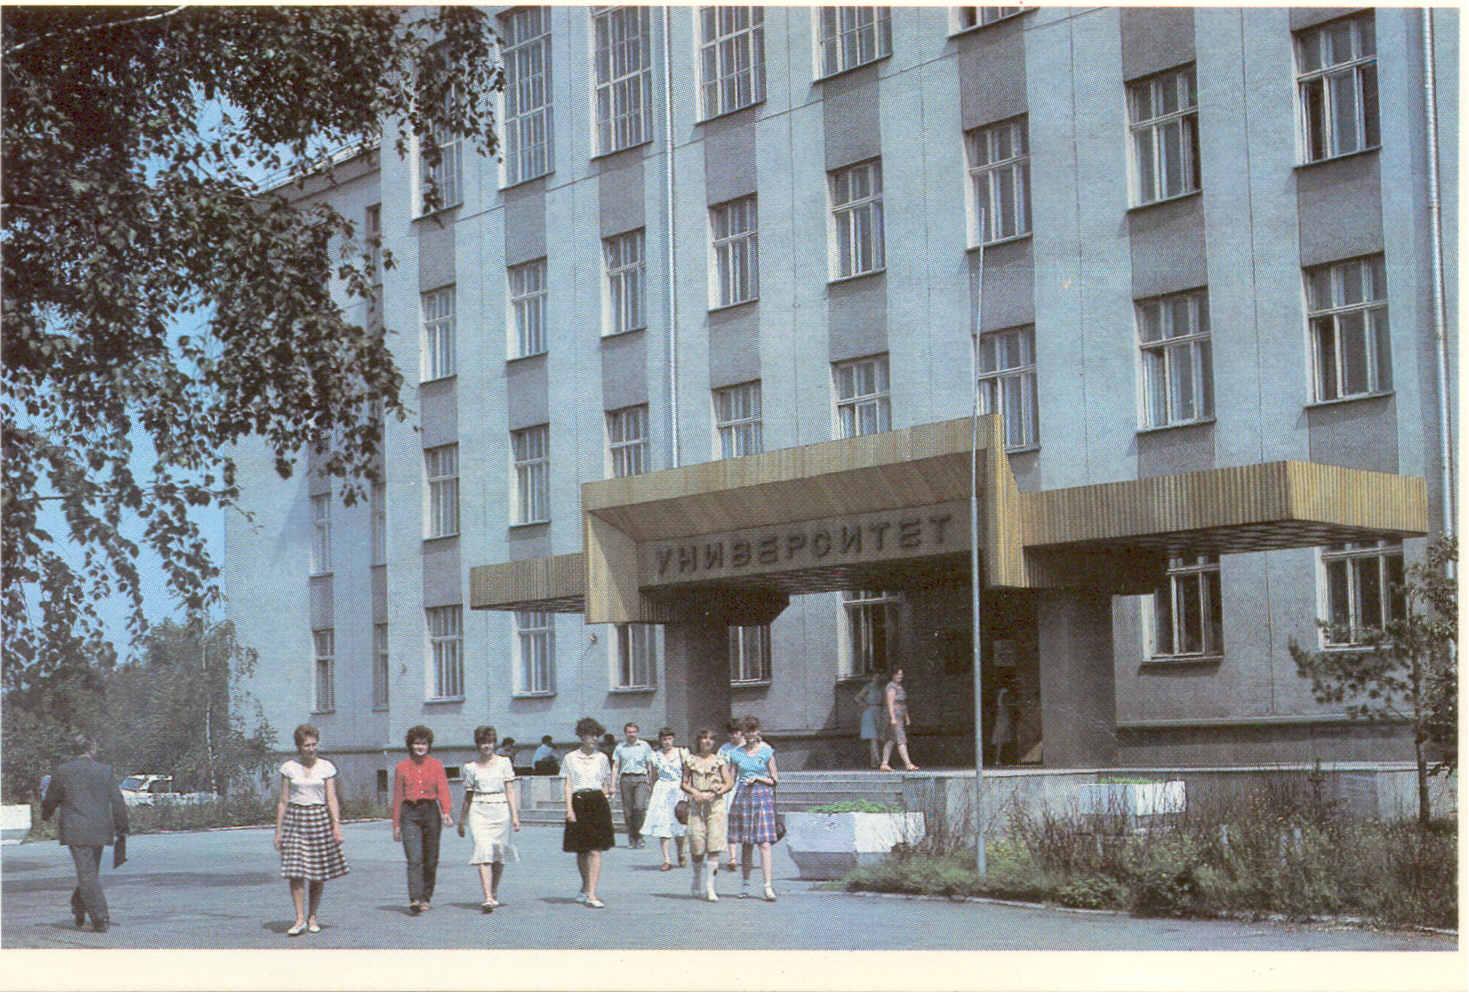 Тюменский университет ТЮМГУ старый корпус